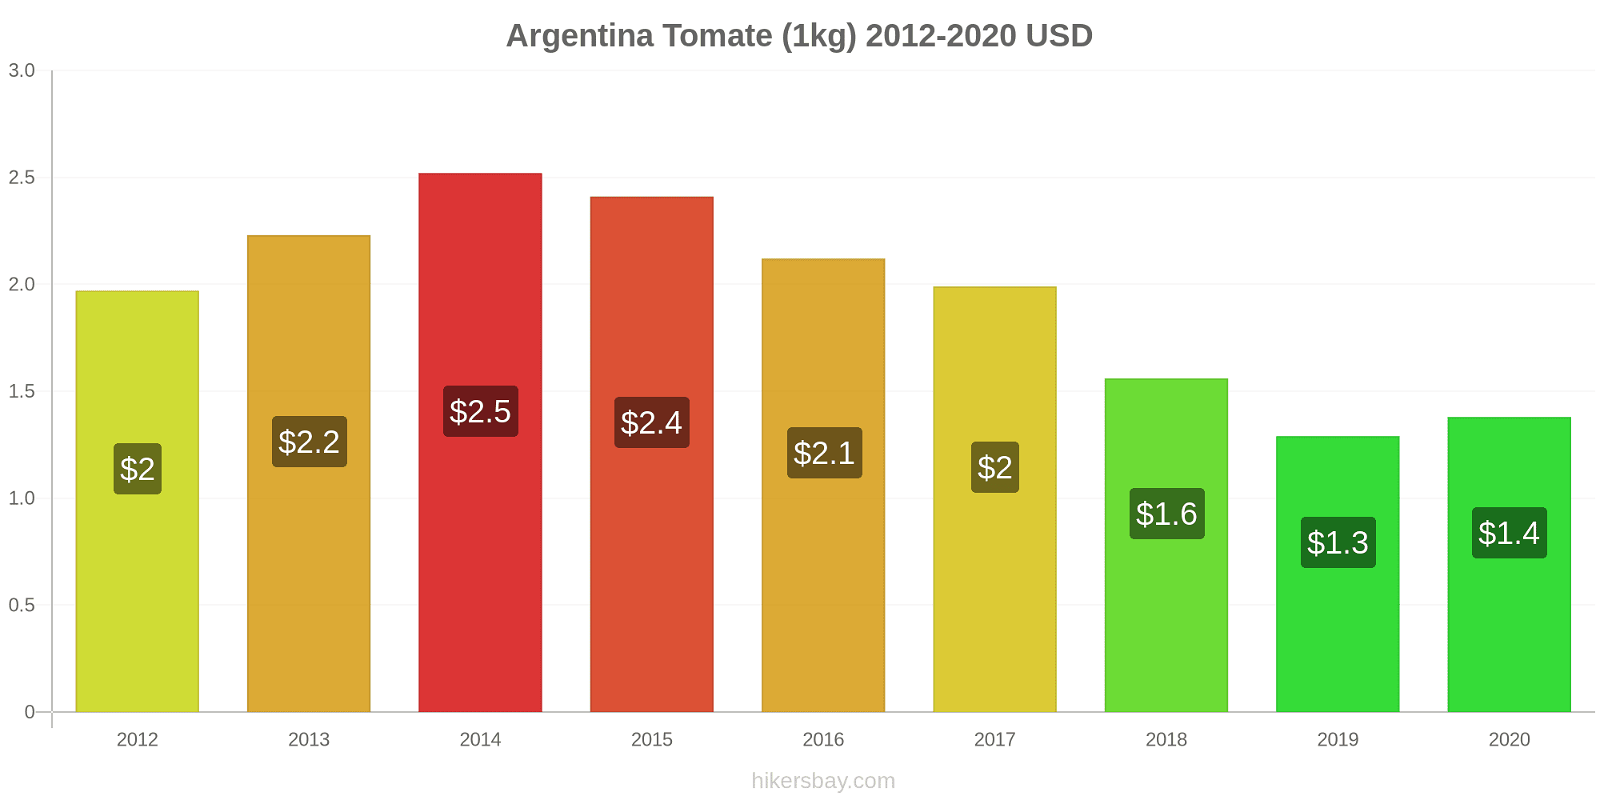 Argentina variação de preço Tomate (1kg) hikersbay.com